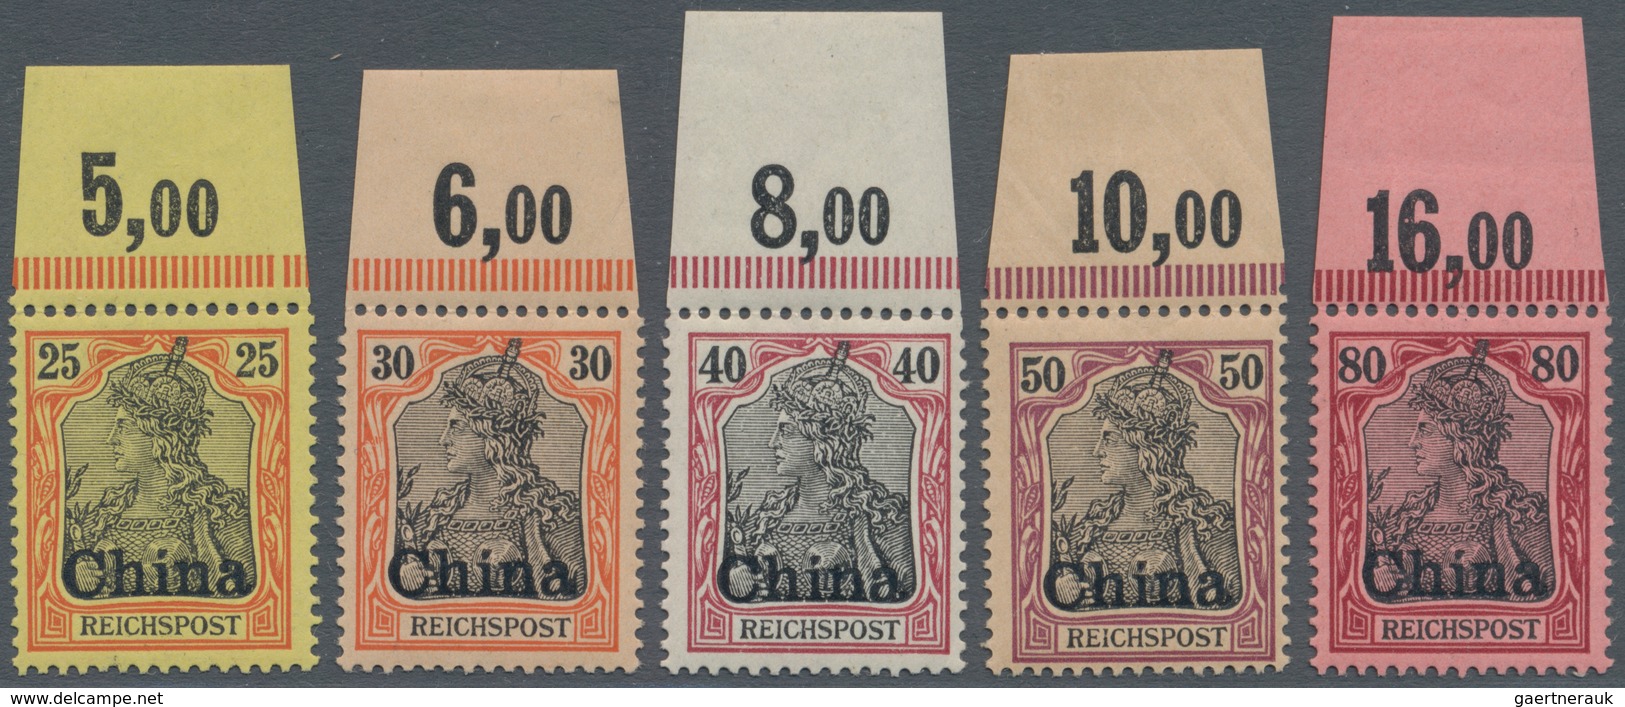 Deutsche Post In China: 1901. 3 Pfg Braun Bis 5 Mk Grünschwarz/bräunlichkarmin. Die Amtlich Nicht Au - Chine (bureaux)